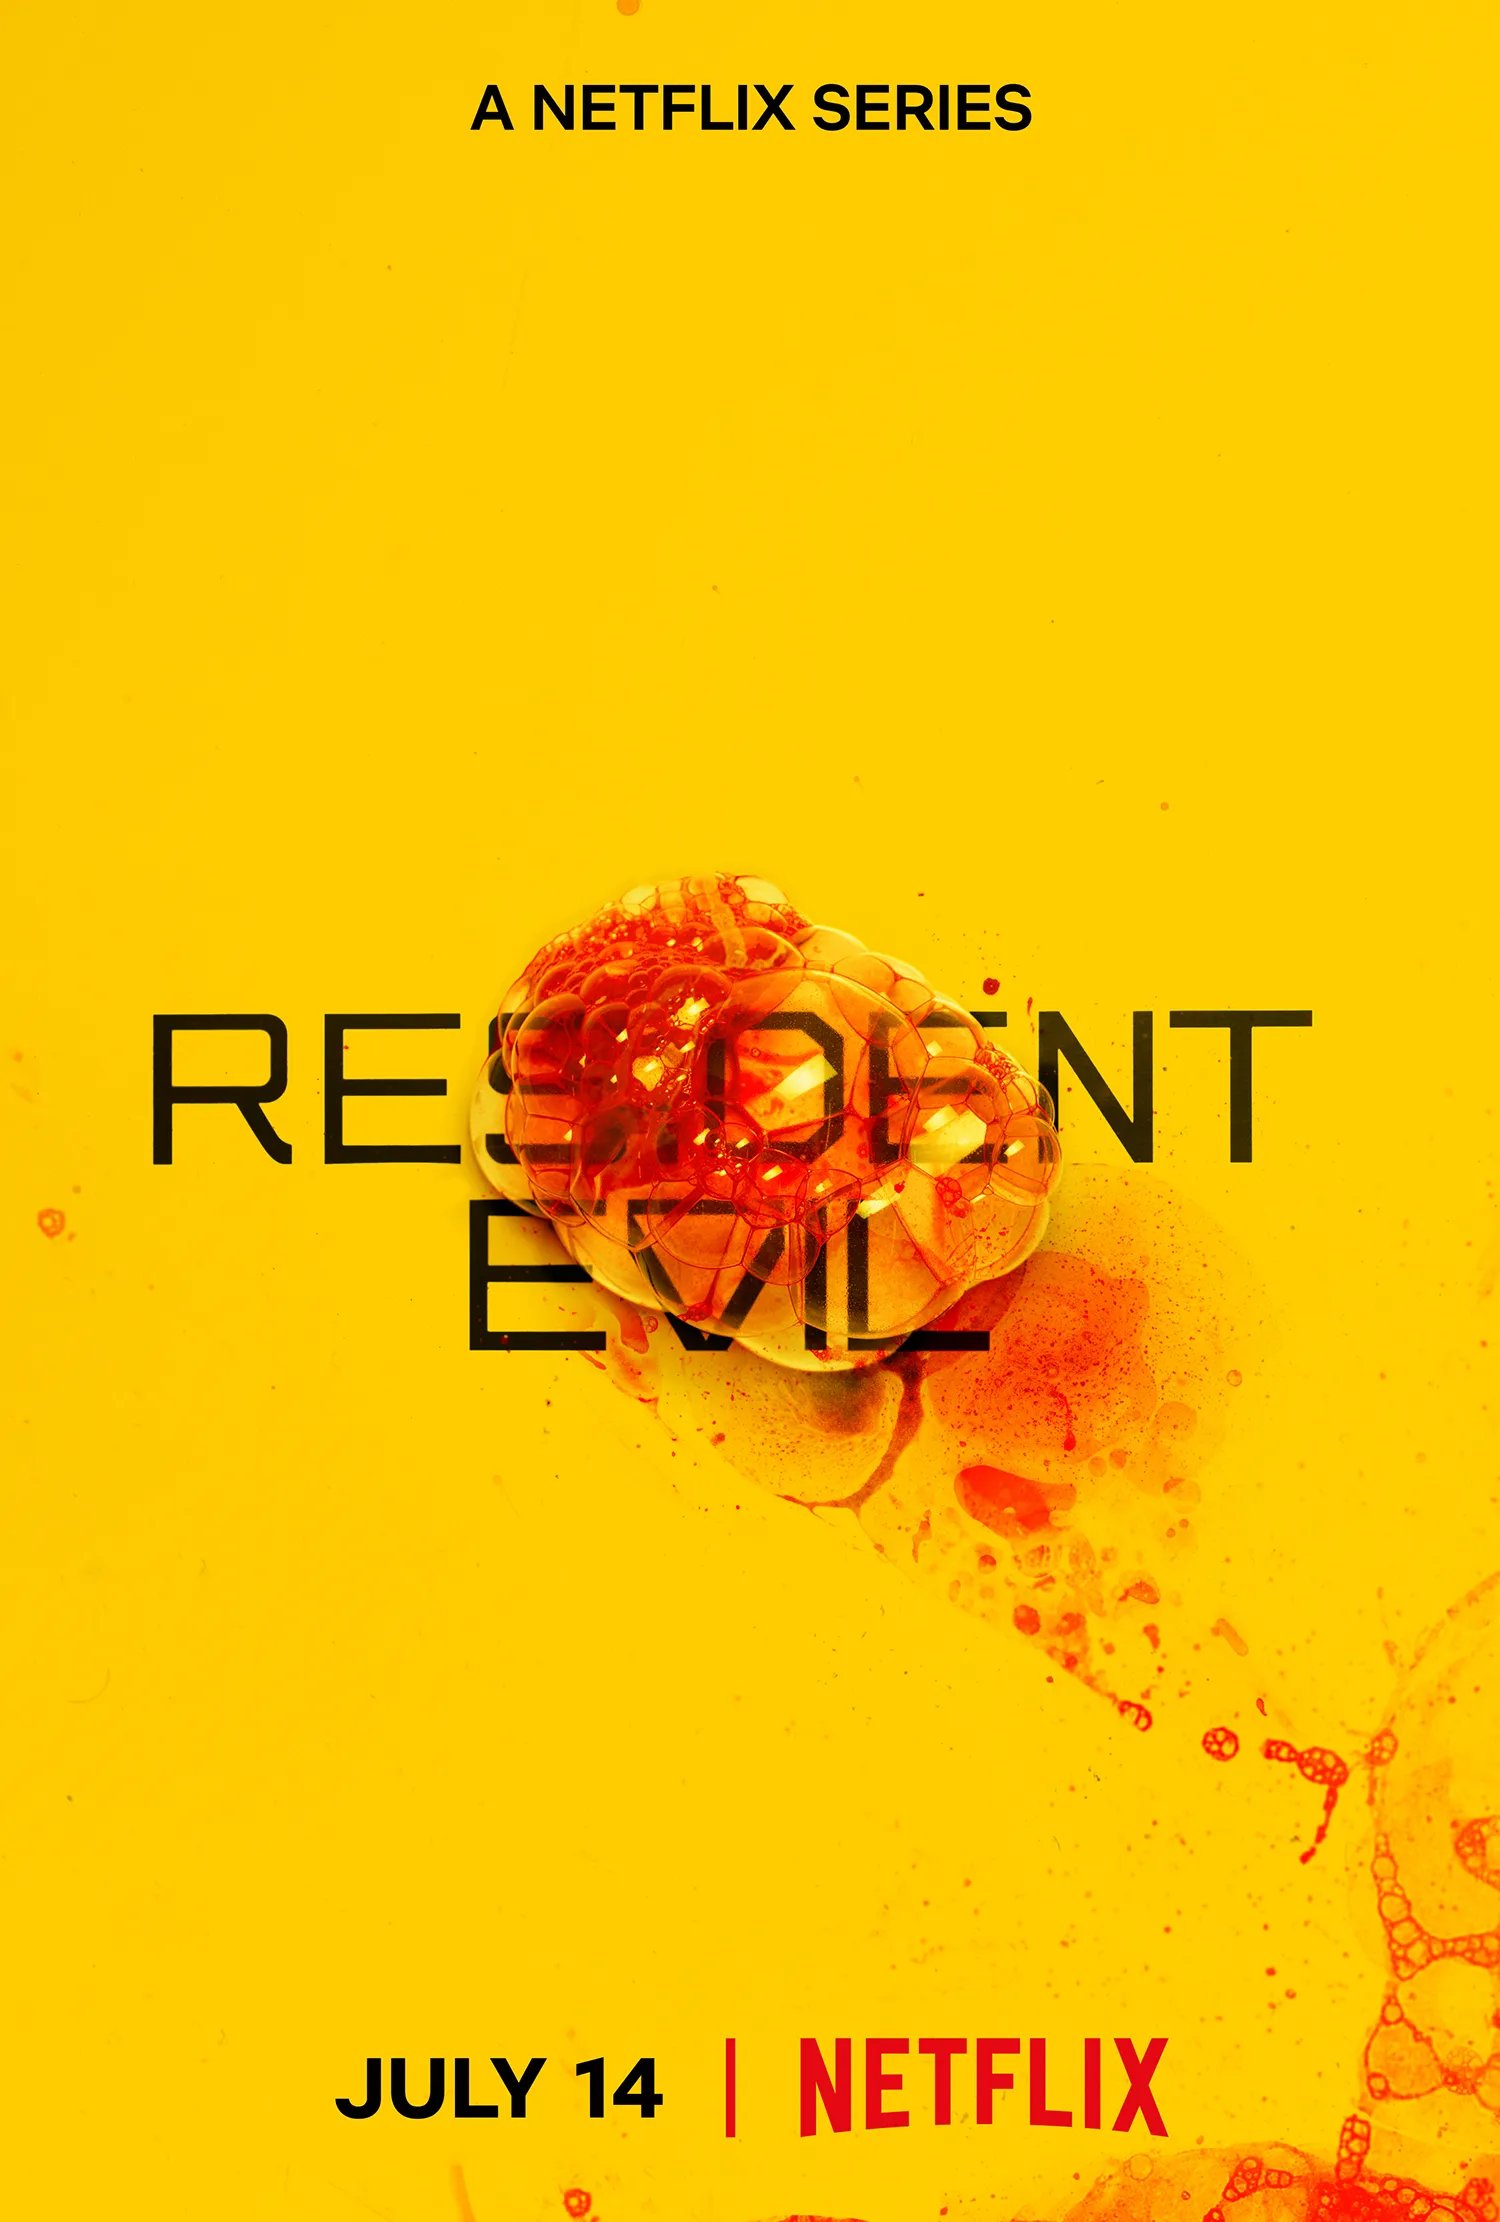 Resident Evil - Série Live-action da Netflix ganha pôsteres revelando data de lançamento